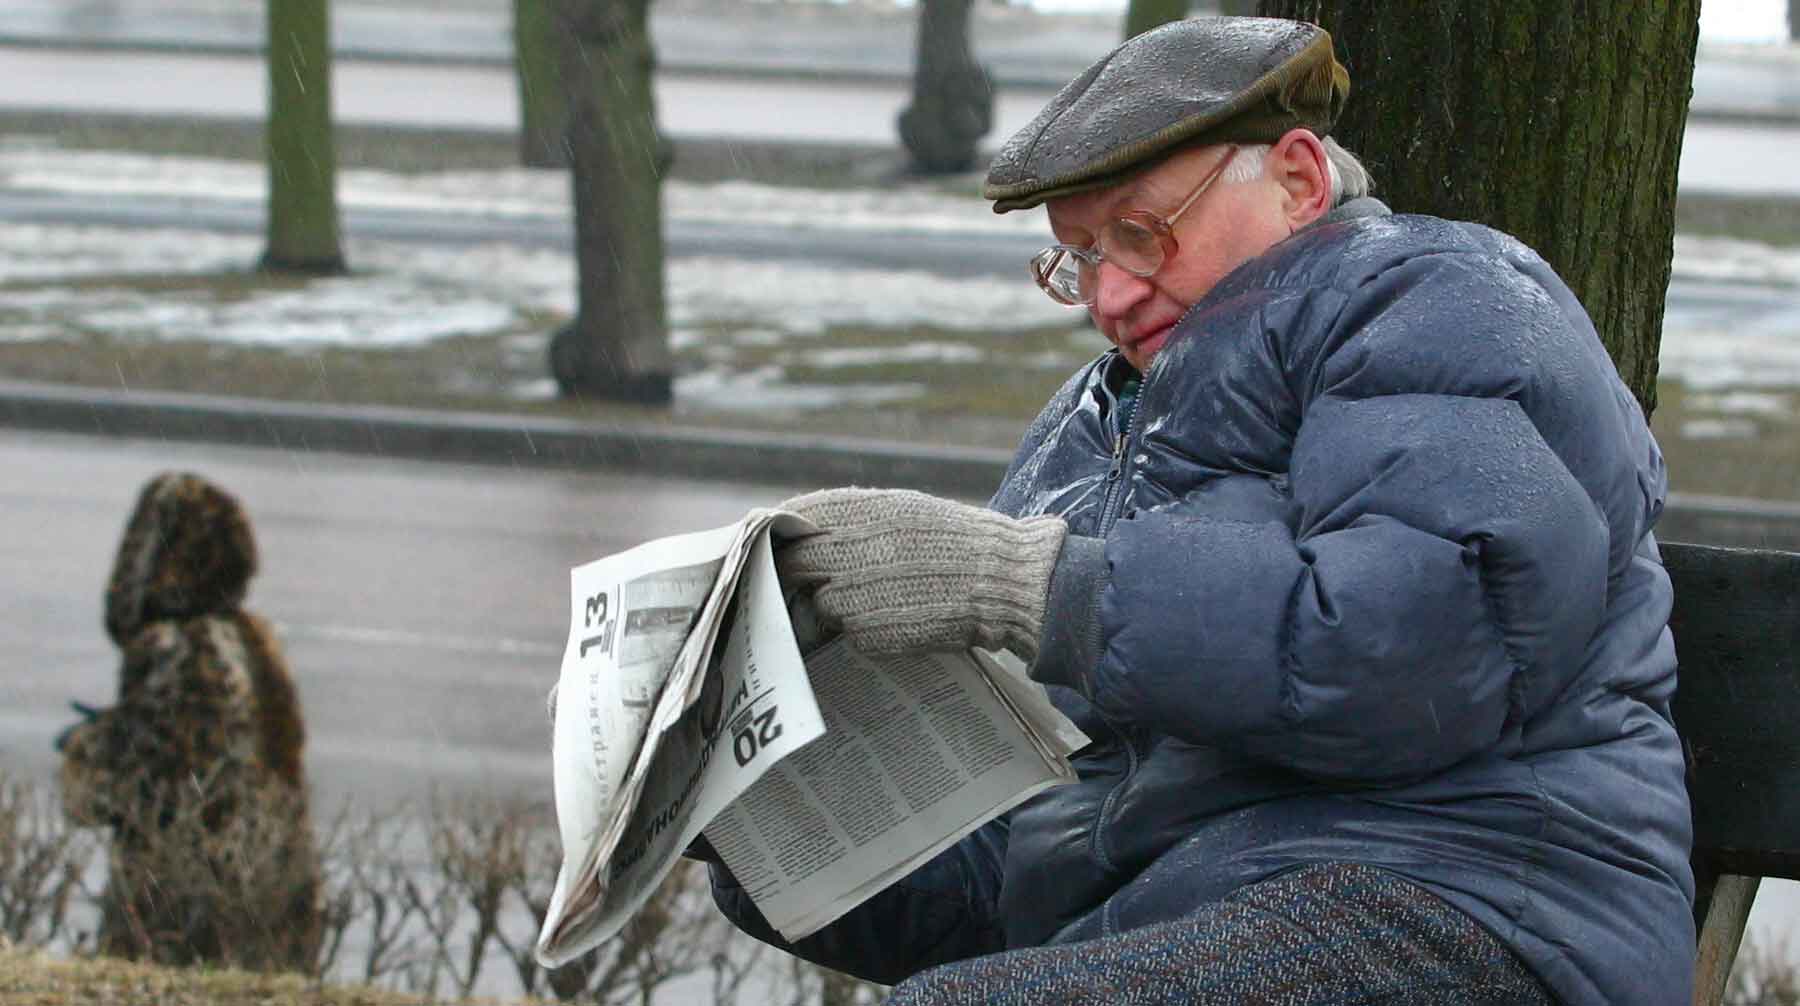 Cпециалисты связывают «экстремально высокий» уровень безработицы с нежеланием бизнесменов принимать пожилых сотрудников Фото: © GLOBAL LOOK press / Vasilii Smirnov